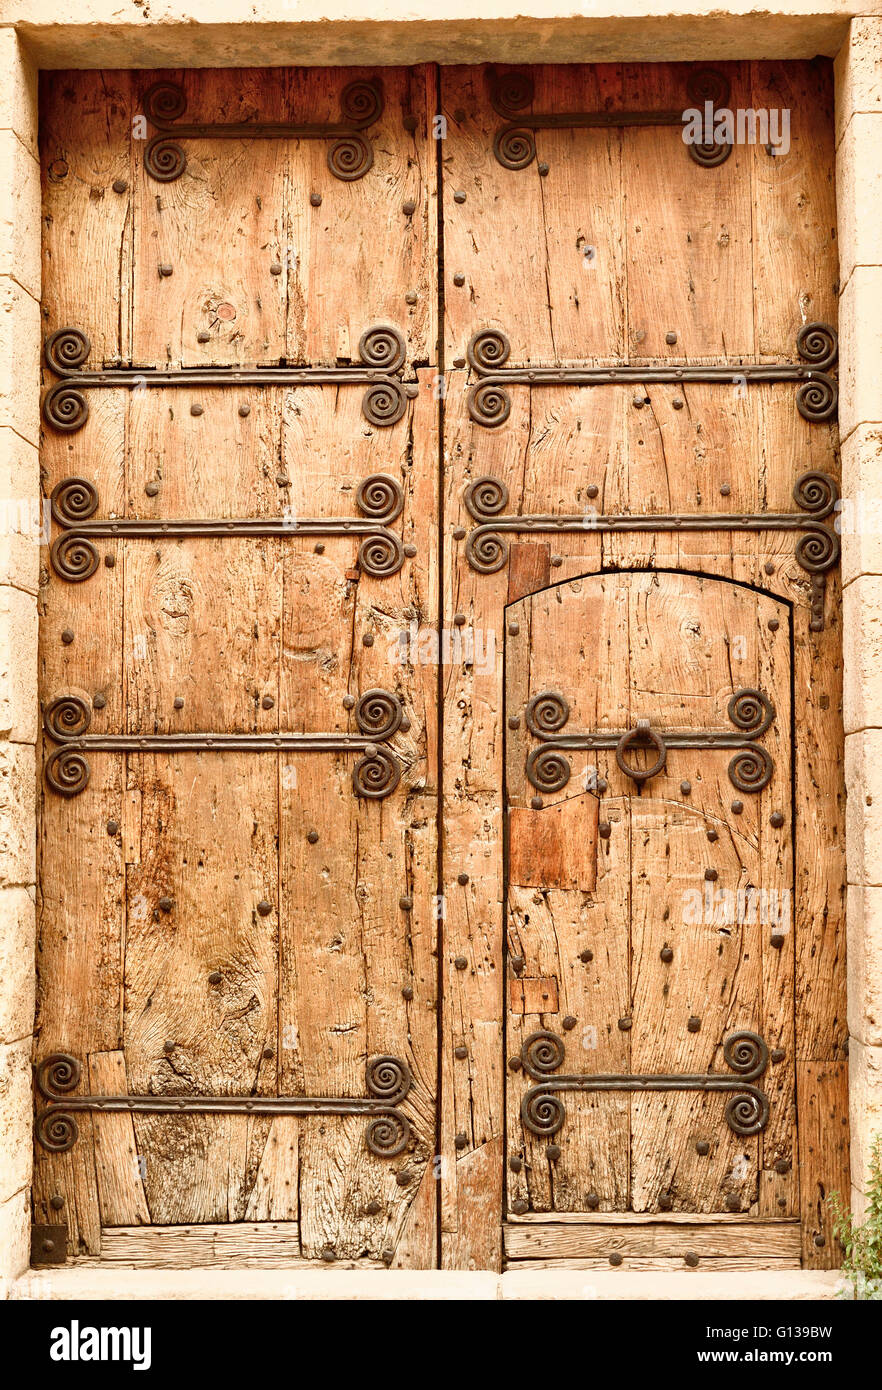 Dettaglio della porta e di elementi in ferro battuto. Monastero di Pedralbes. Barcellona, in Catalogna, Spagna, Europa Foto Stock